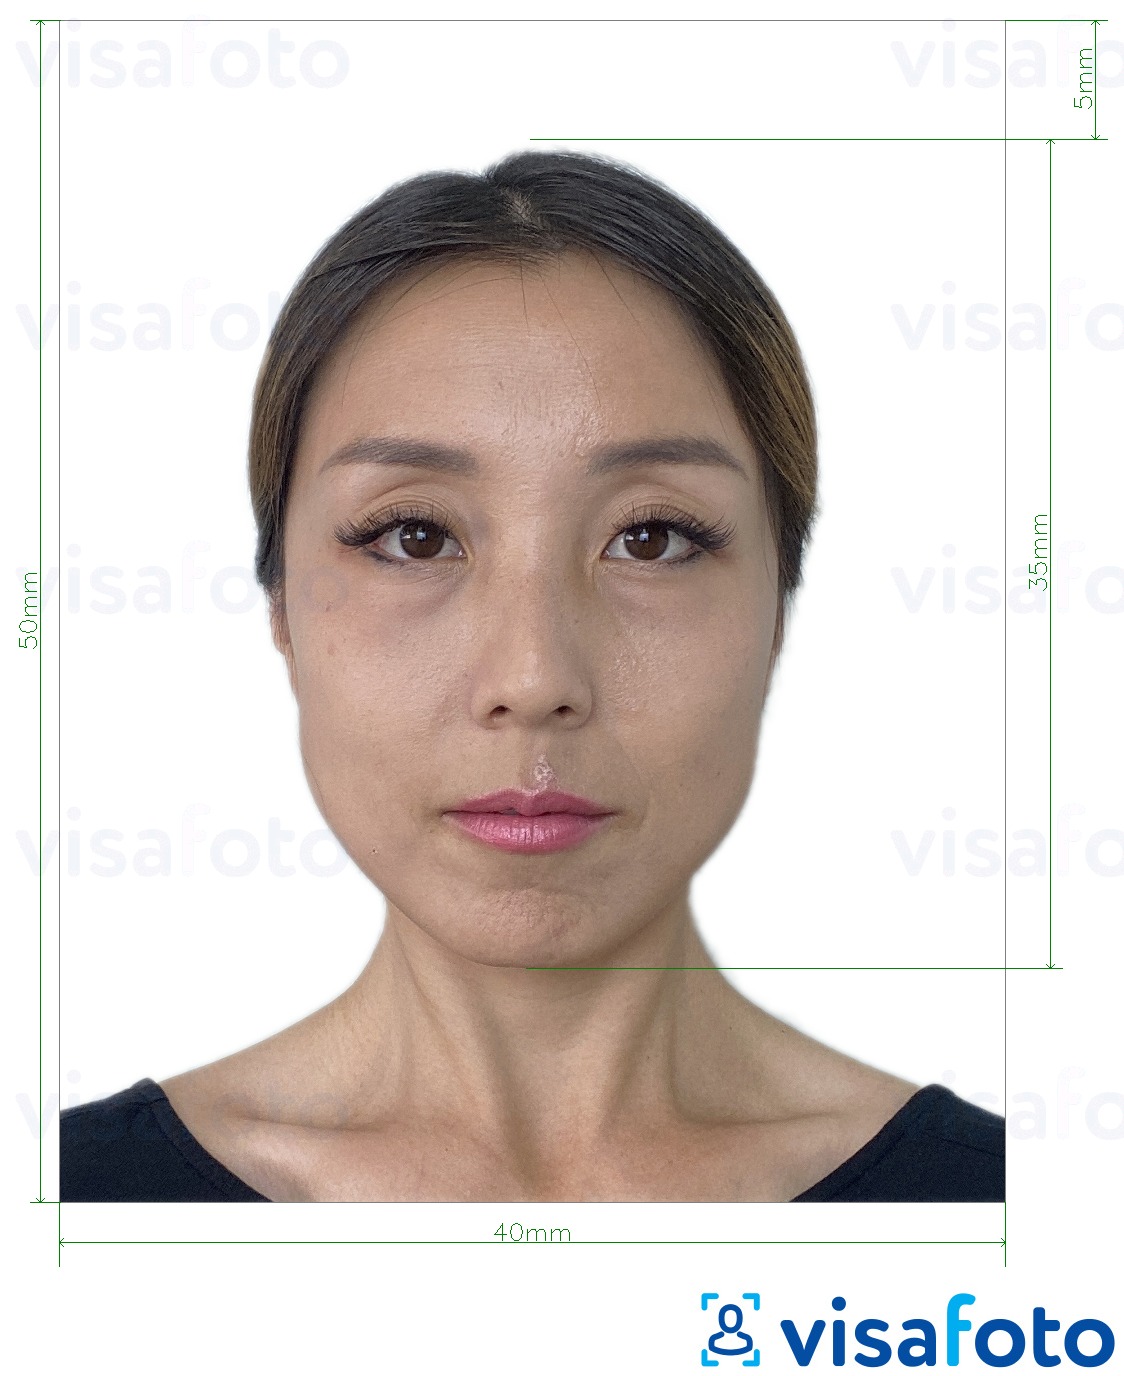  Hongkongi viisa 40x50 mm (4x5 cm) fotonäidis koos täpse infoga mõõtude kohta.